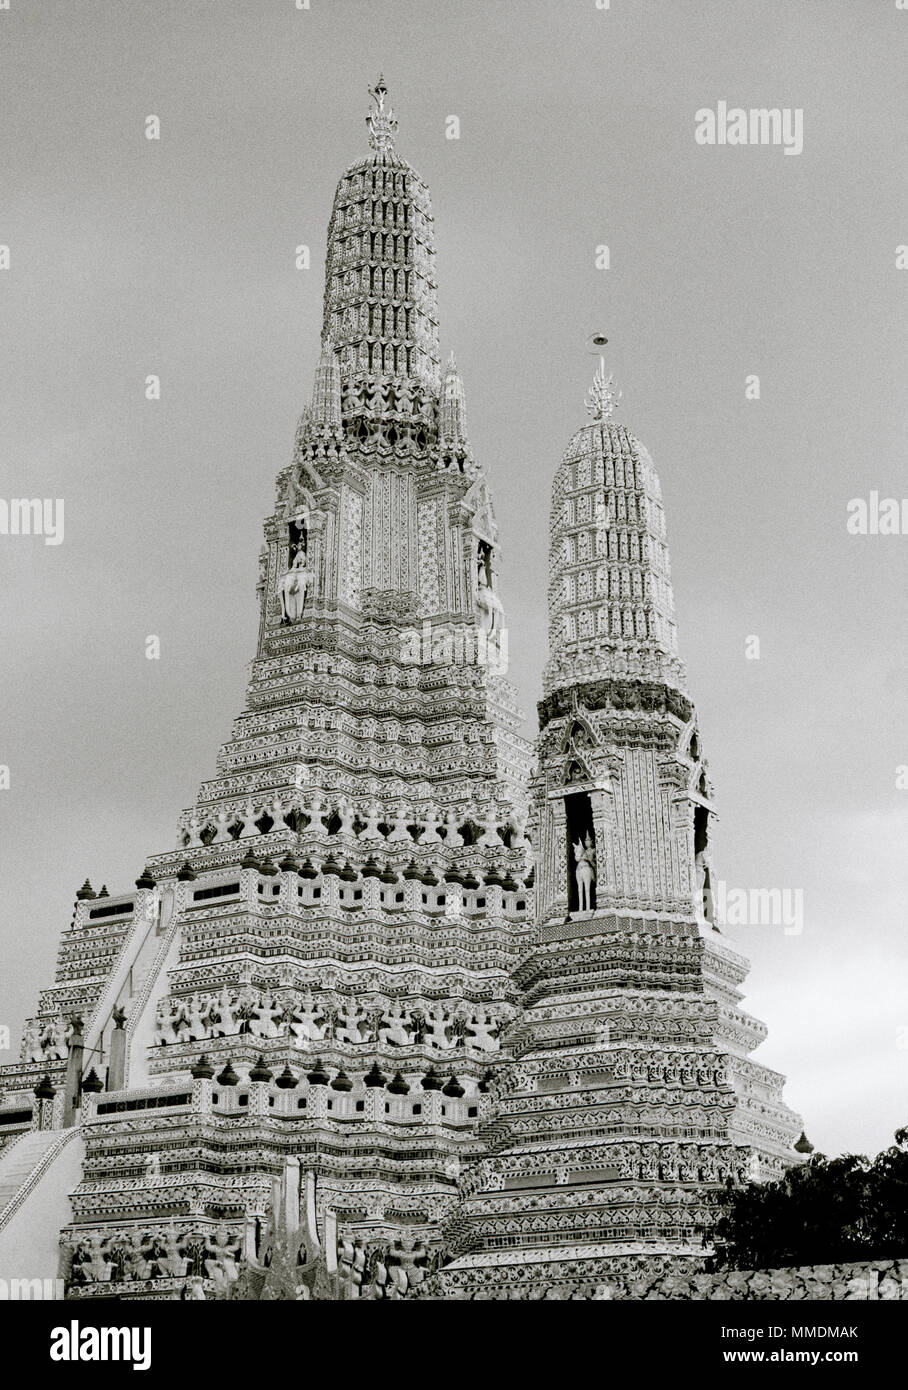 Tempio buddista di Tempio di Dawn - Wat Arun tempio a Bangkok Yai Thonburi a Bangkok in Tailandia in Asia del sud-est in Estremo Oriente. Architettura del Buddismo Travel Foto Stock